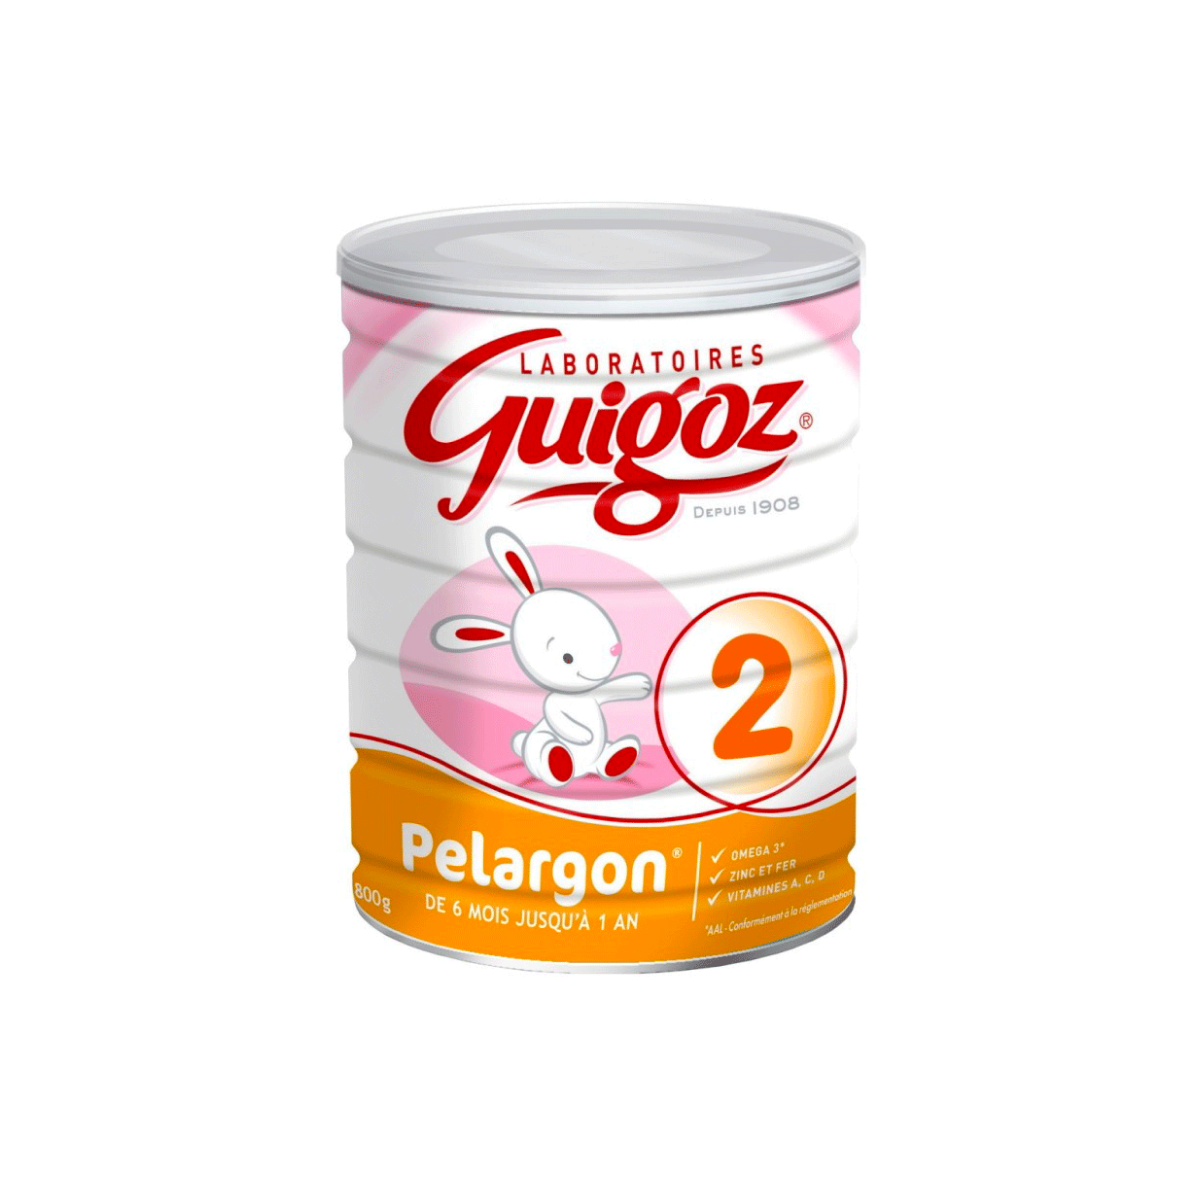 Guigoz 2 Pelargon lait bébé poudre 2eme Age 800g   - Shopping  et Courses en ligne, livrés à domicile ou au bureau, 7j/7 à la Réunion